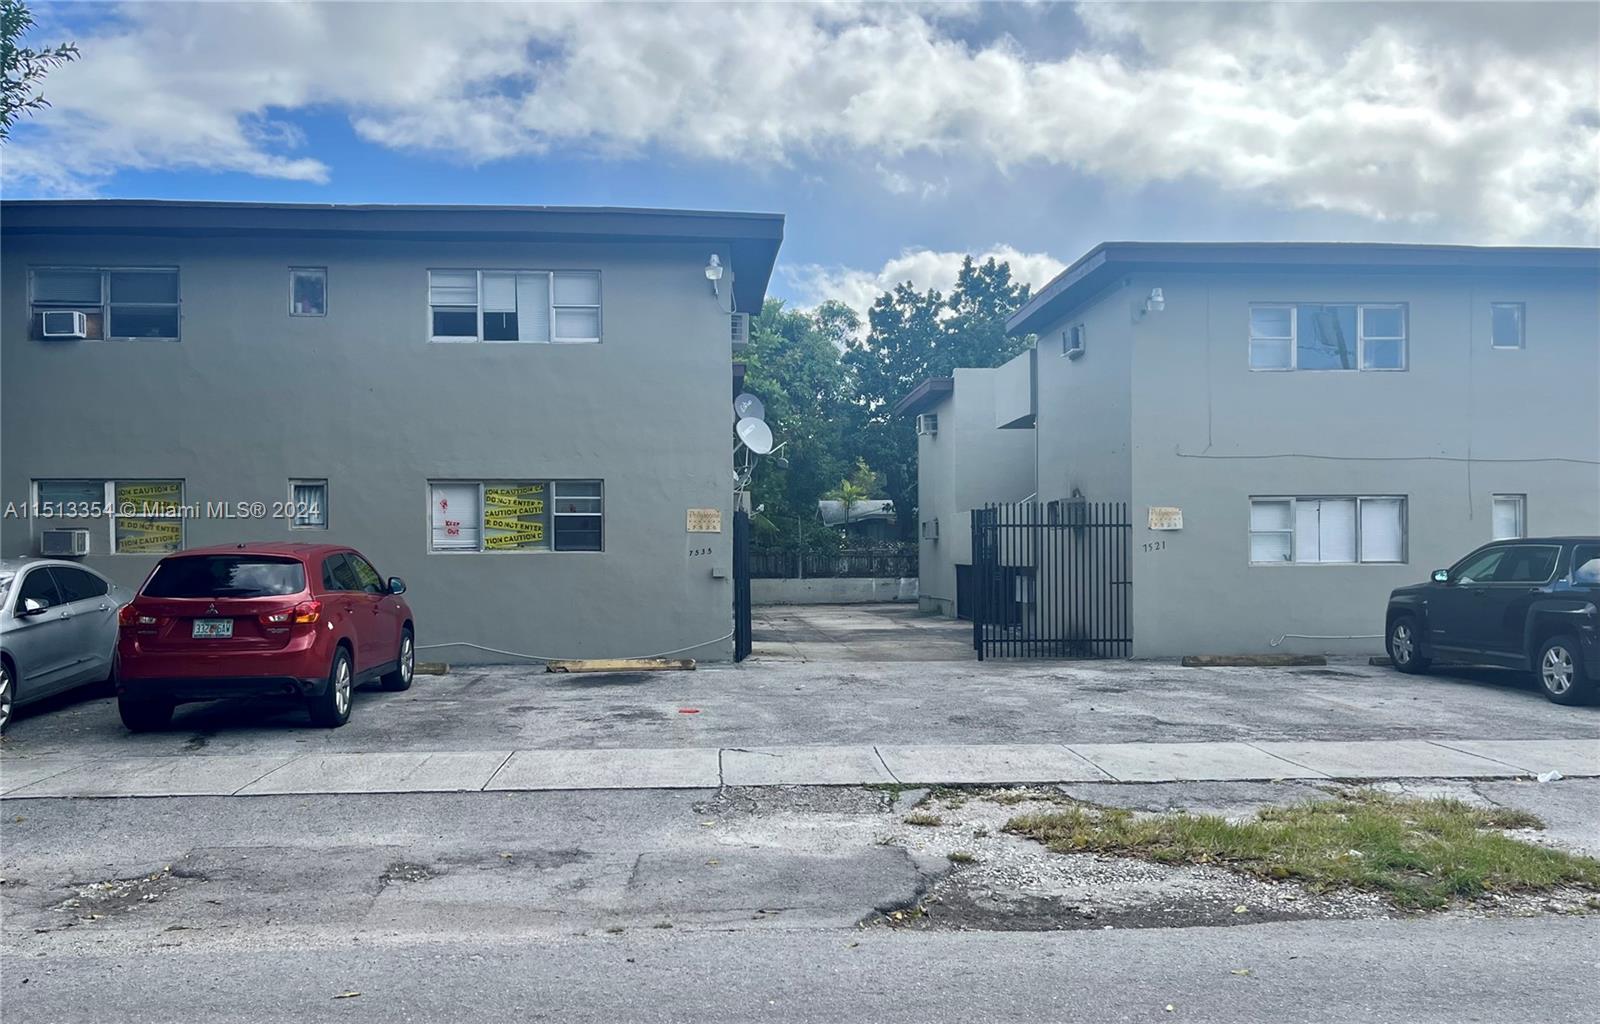 Rental Property at 7521 Ne 2nd Ct Ct, Miami, Broward County, Florida -  - $1,450,000 MO.